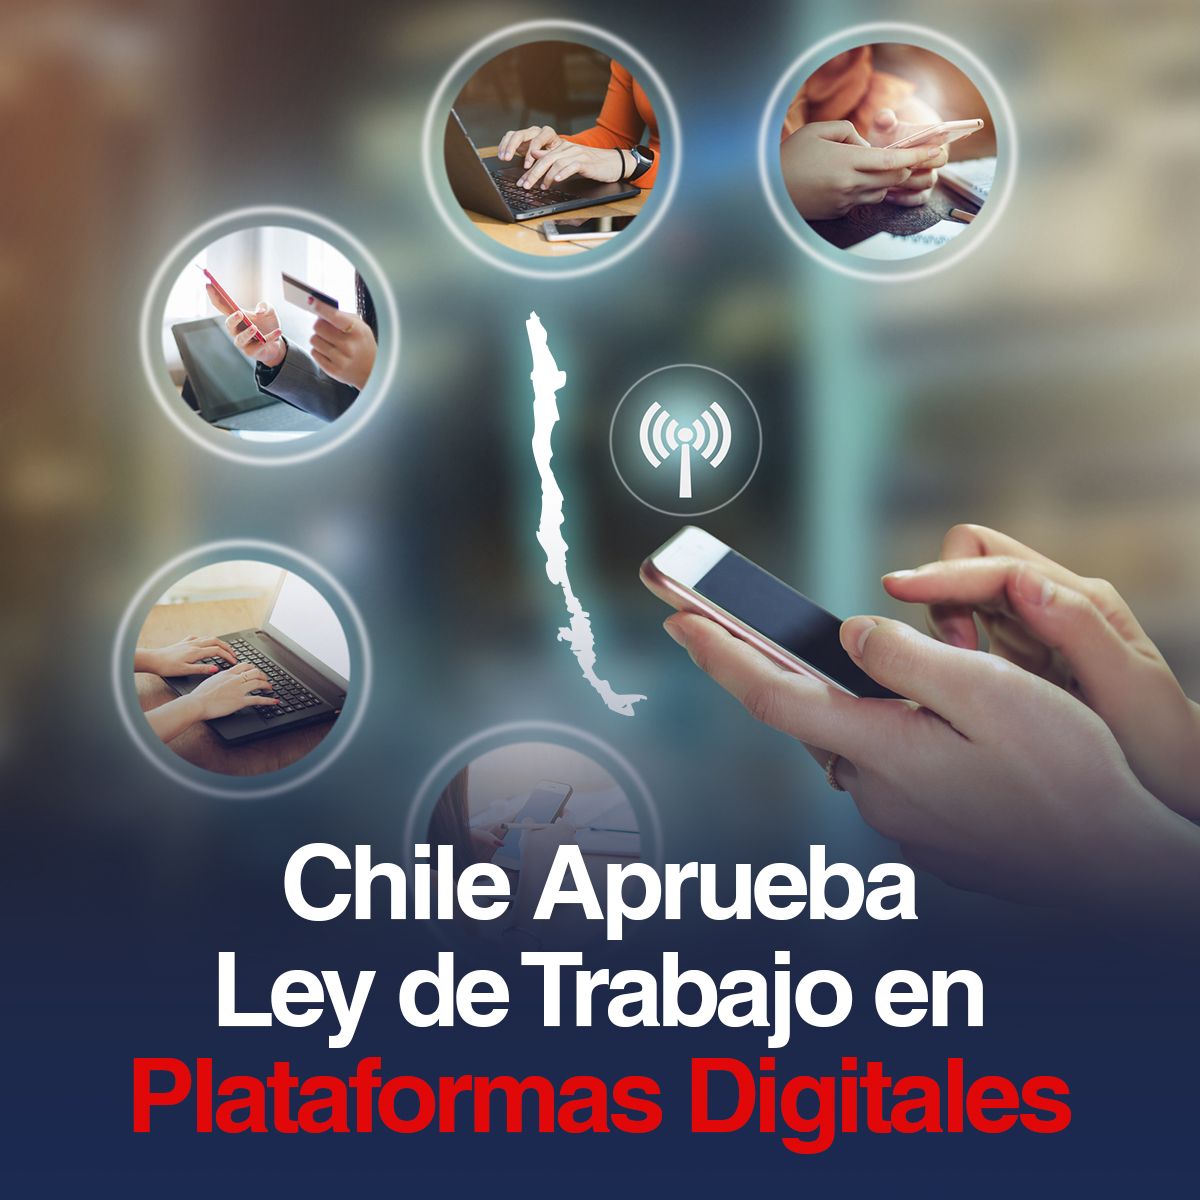 Chile Aprueba Ley de Trabajo en Plataformas Digitales